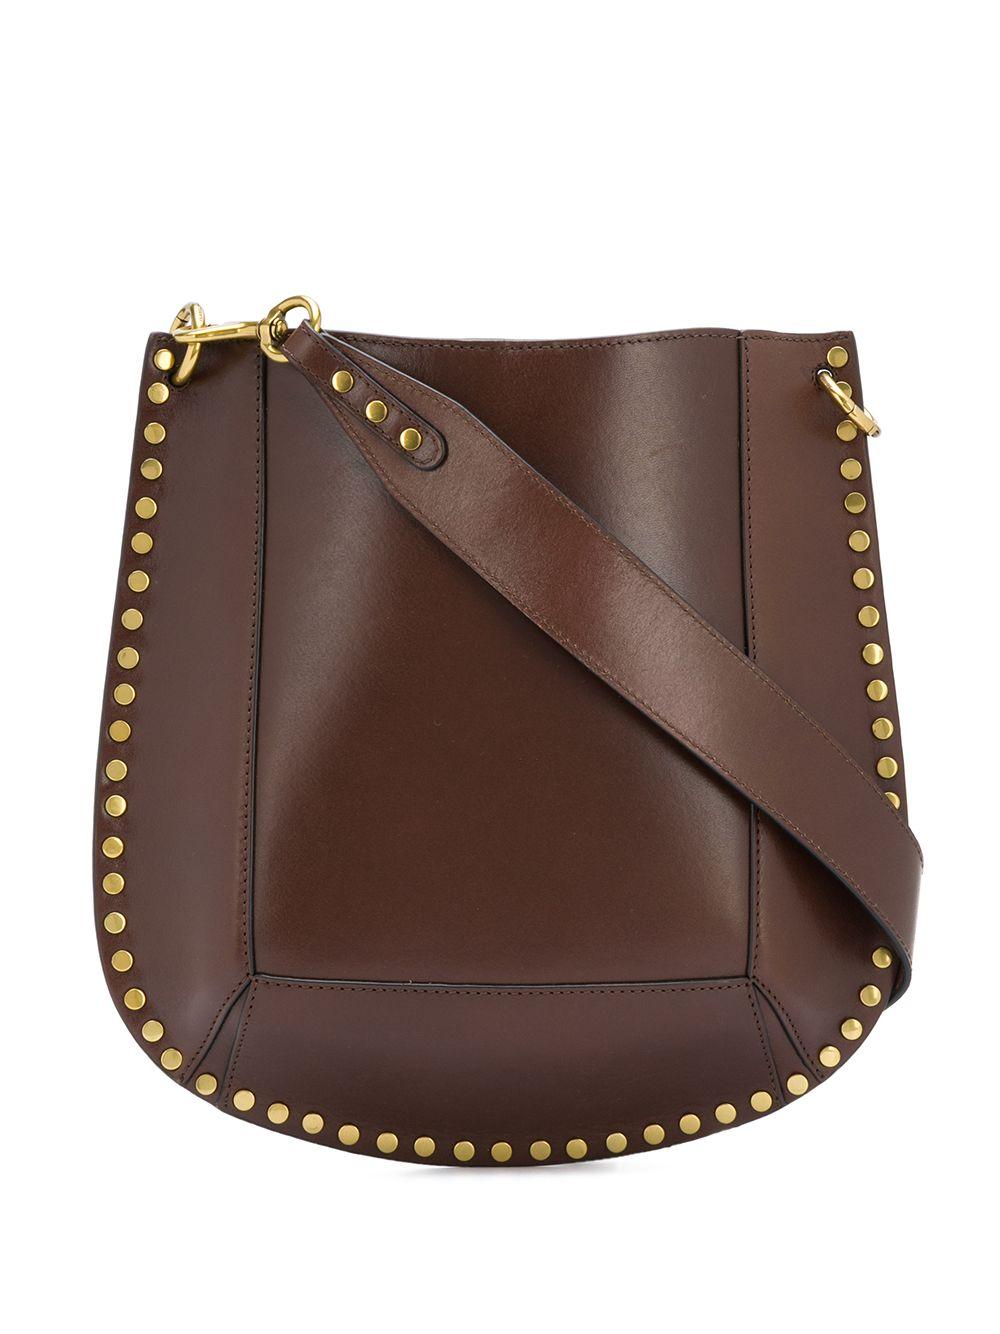 Isabel Marant Leather Stud-detail Shoulder Bag in Brown - Lyst